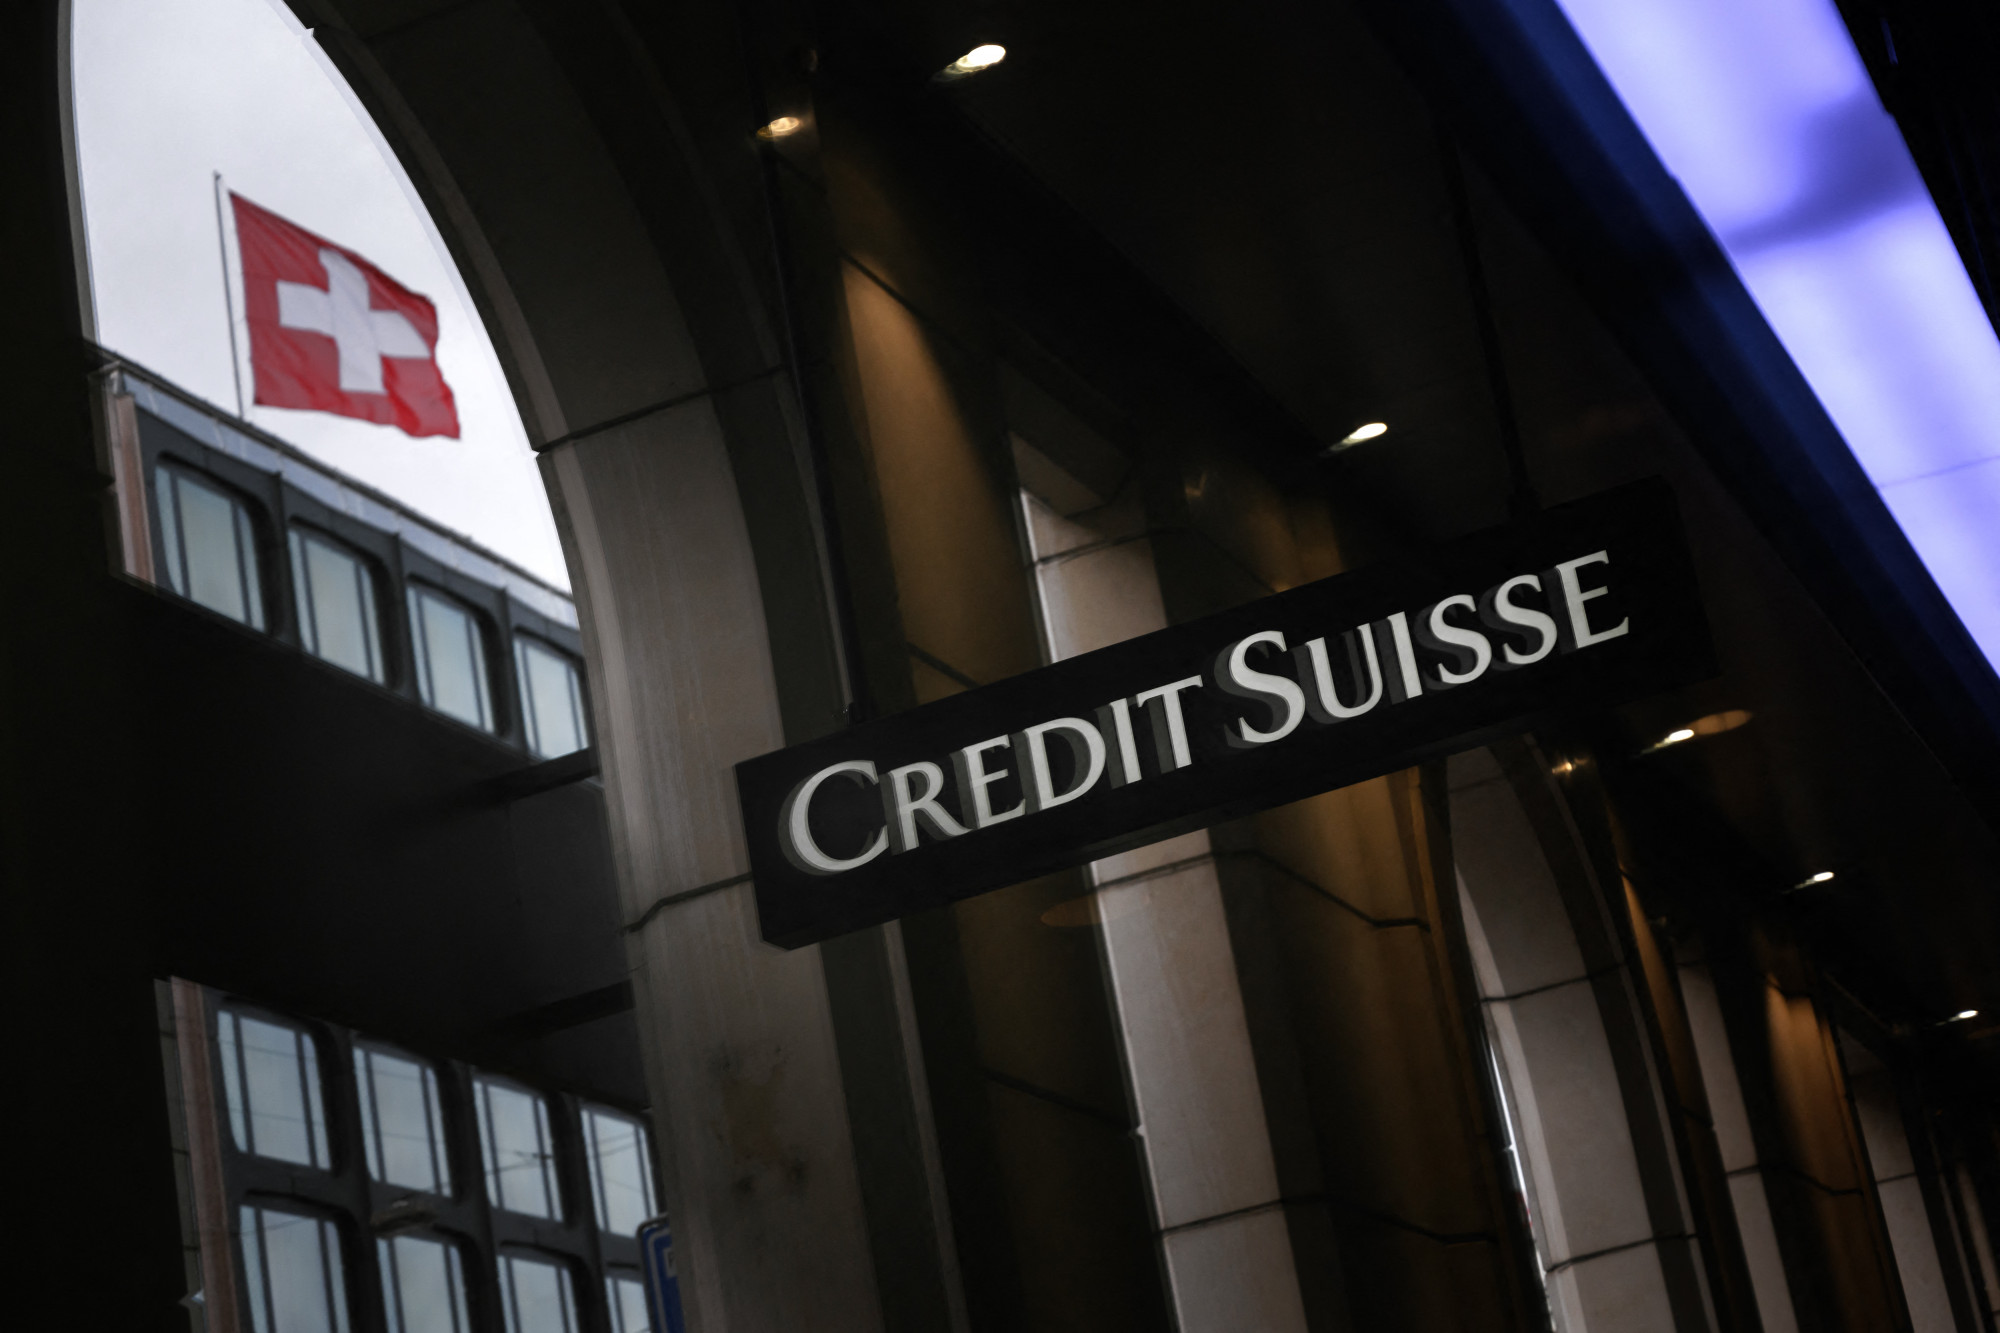 Nyomoznak a szivárogtatók után, akik nyilvánosságra hozták a Credit Suisse-nél bankszámlát vezető bűnözők adatait